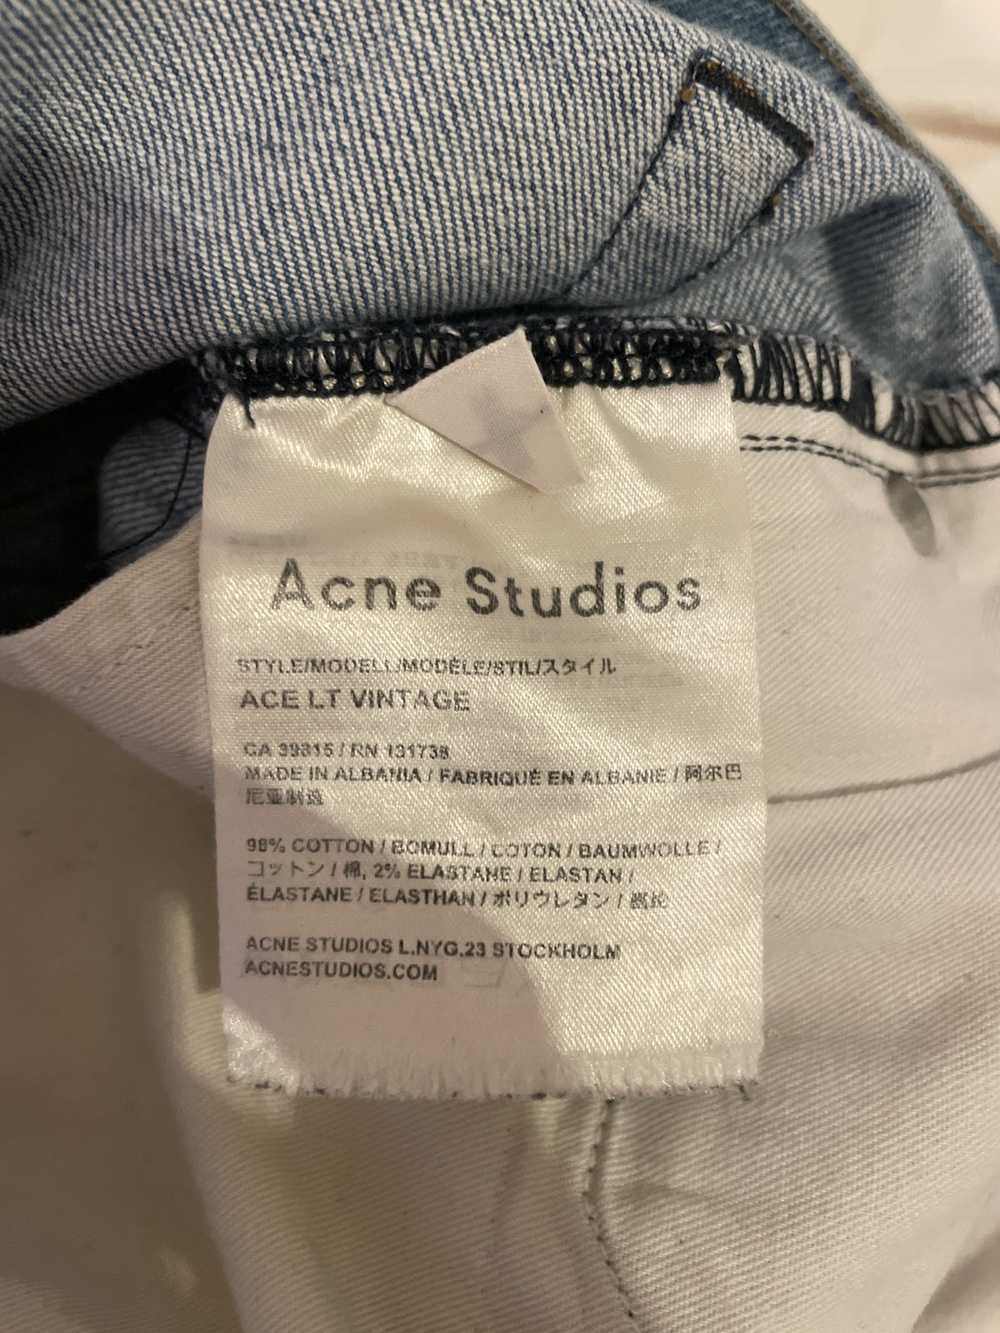 Acne Studios Ace Light Vintage Denim Jeans - image 3